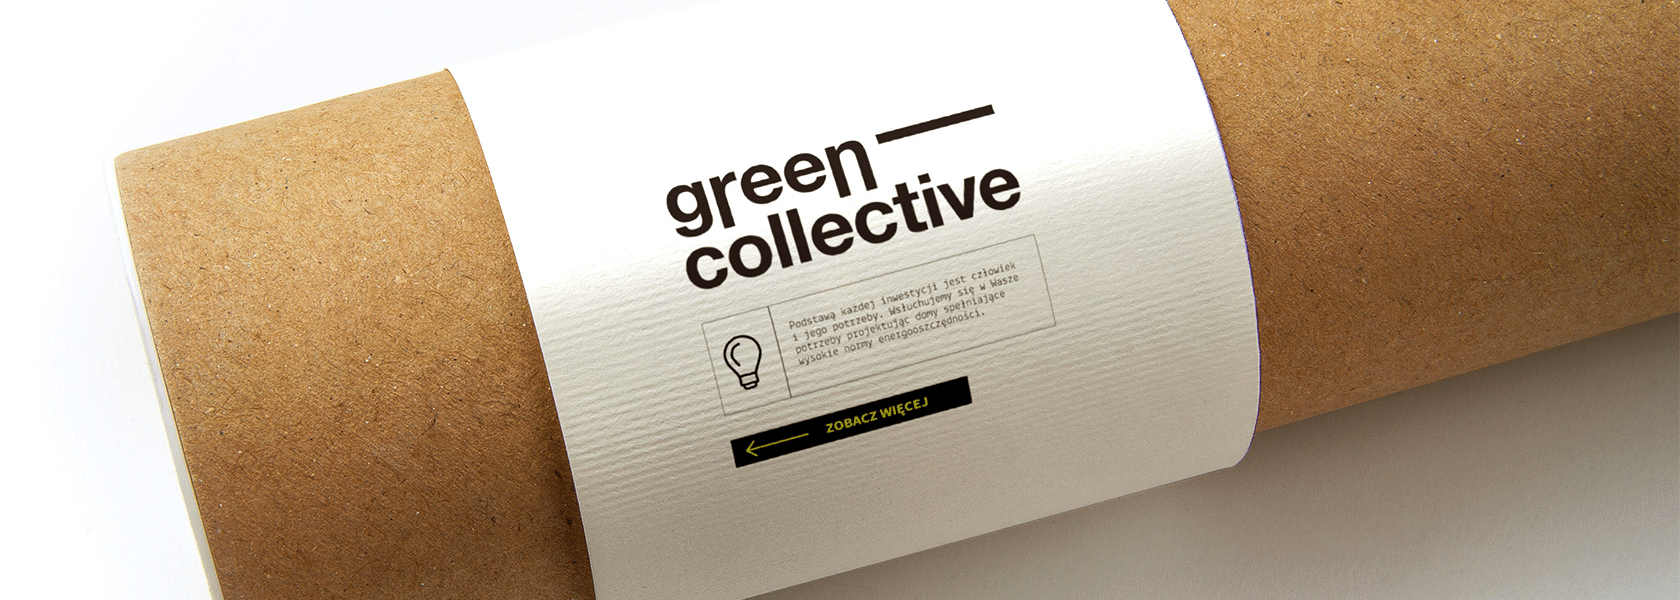 Identyfikacja wizualna dla dewelopera Green Collective